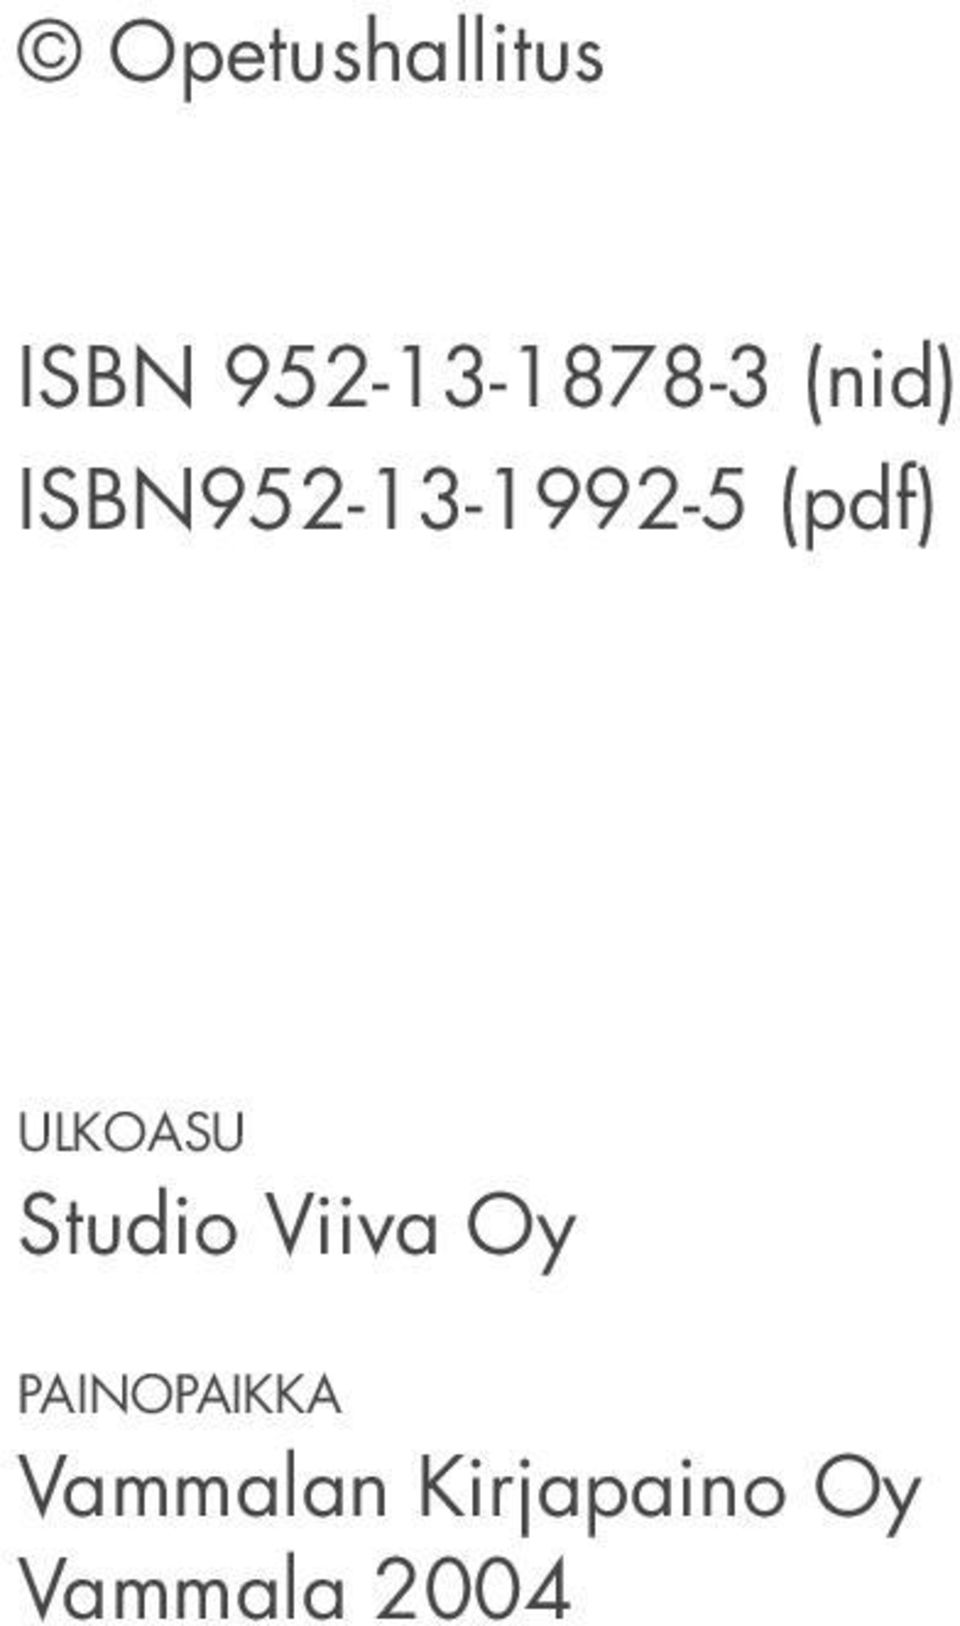 ULKOASU Studio Viiva Oy